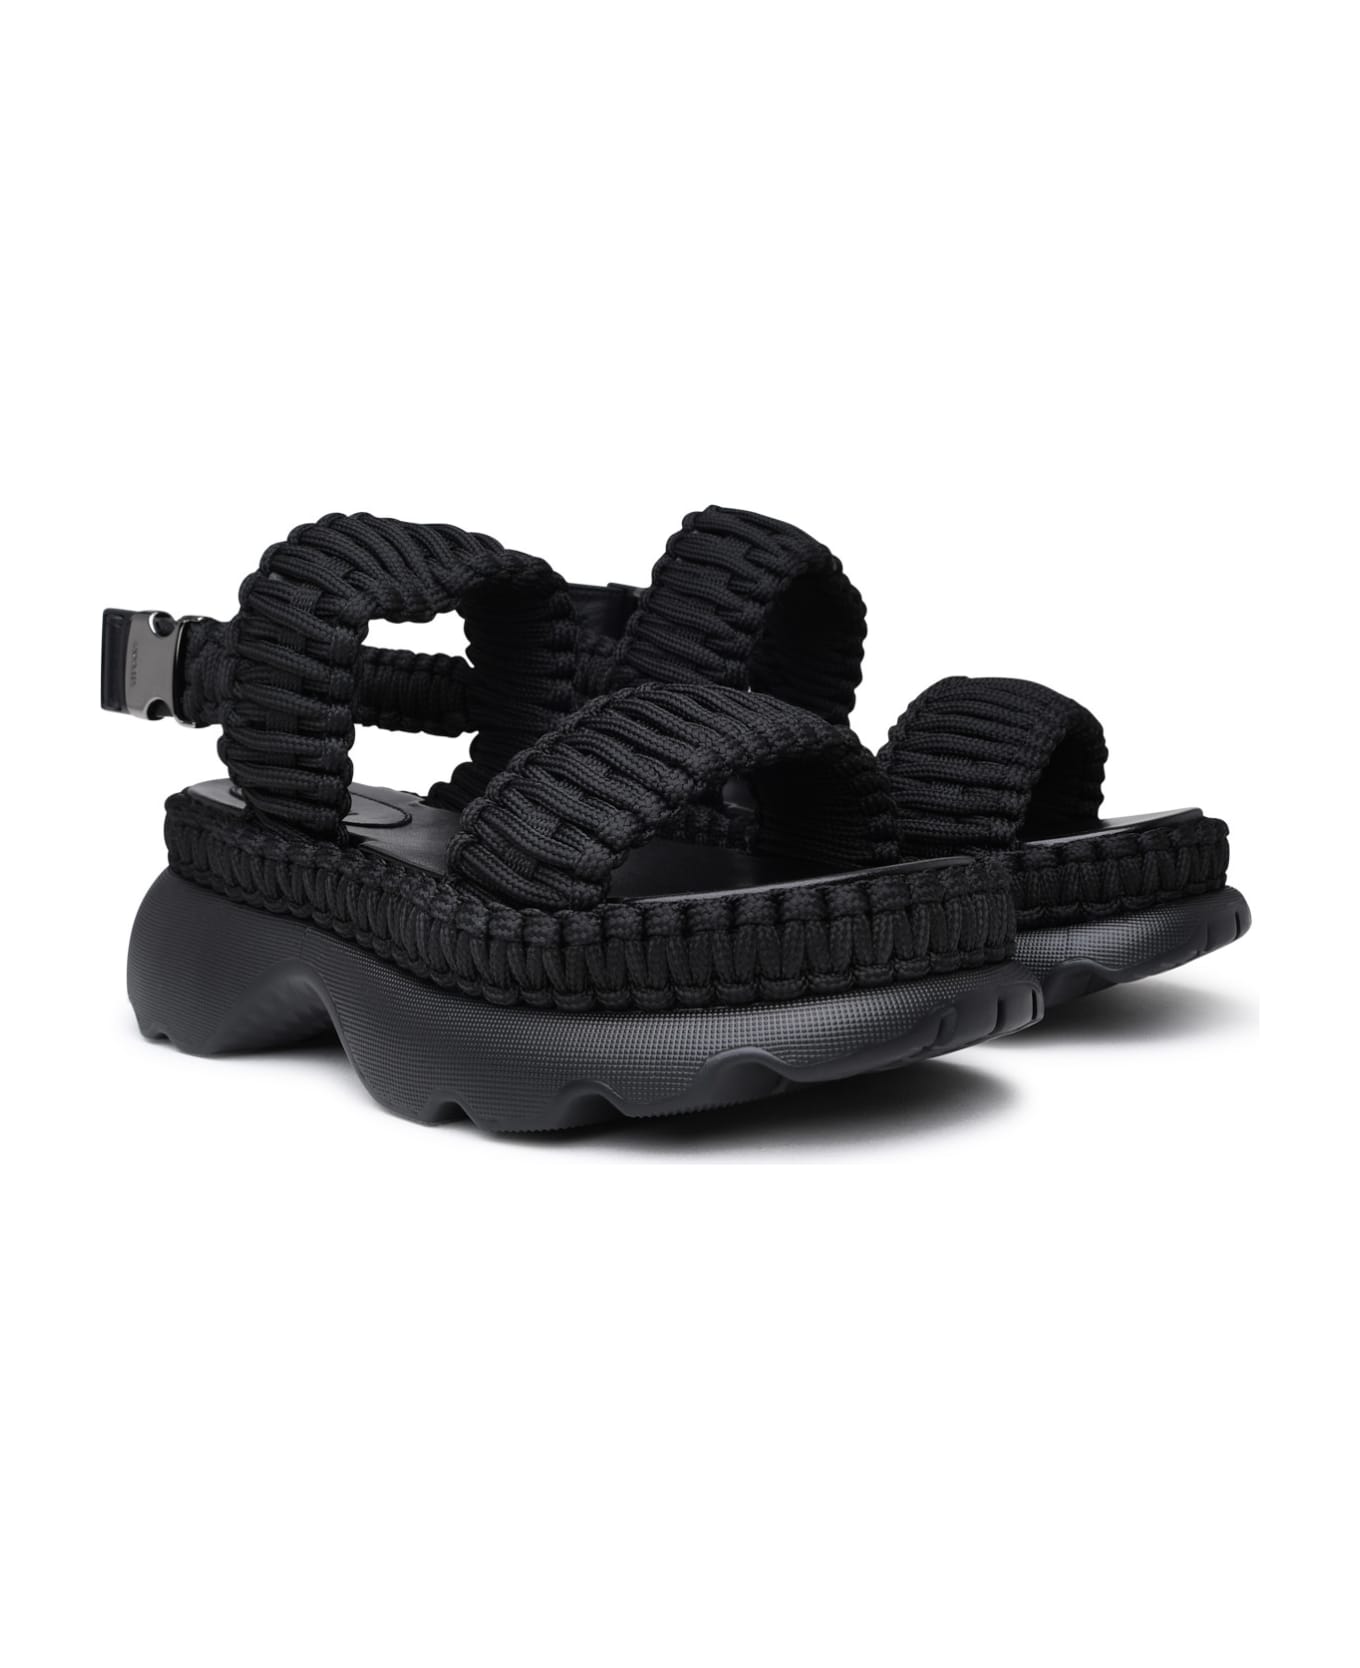 Moncler Black Polyester Beley Sandals - Black